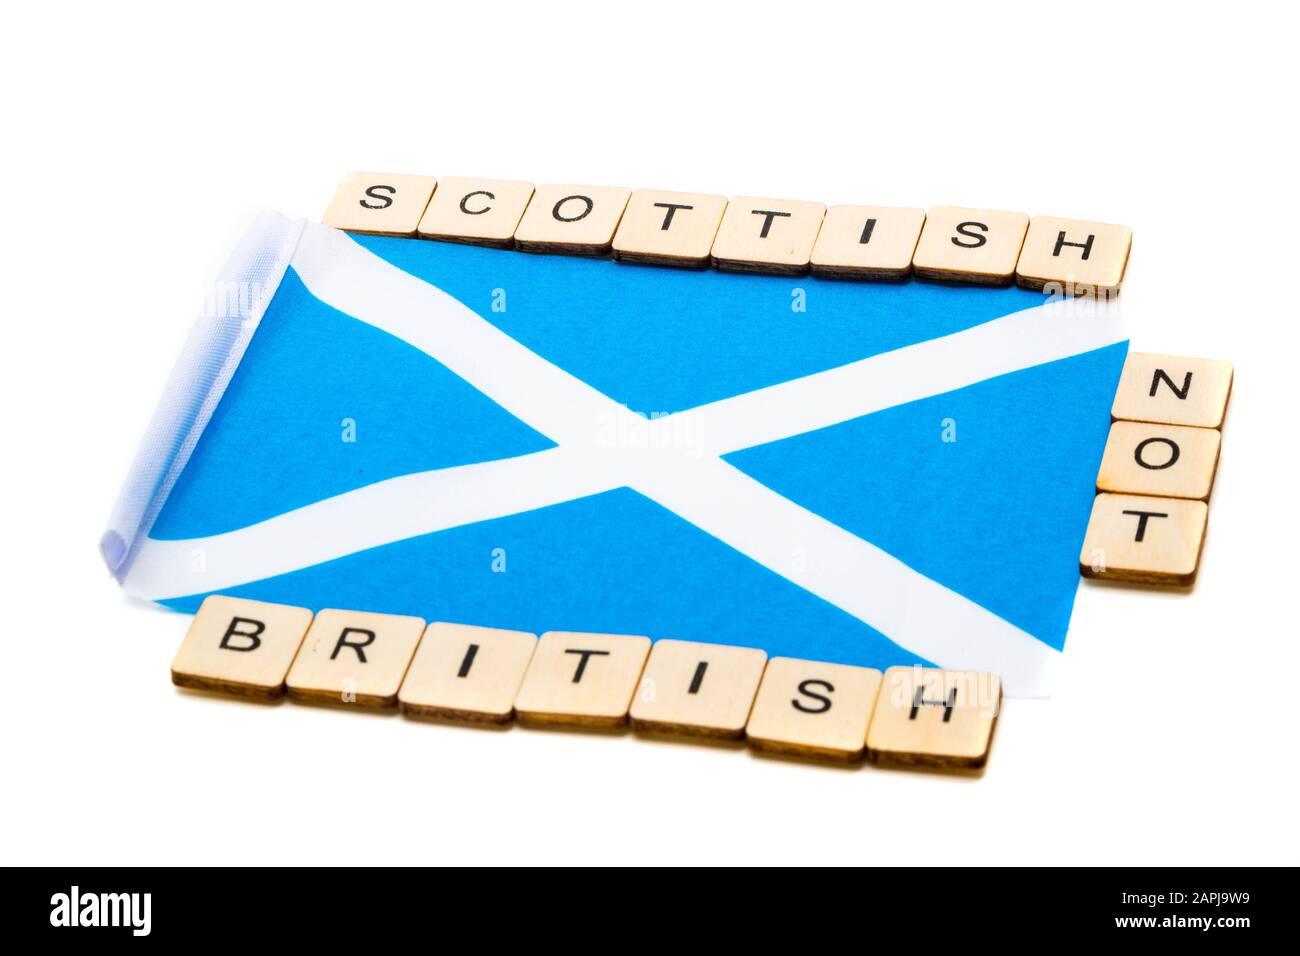 Die Nationalflaggen Schottlands, der Saltaire oder das Kreuz von St Andrews auf weißem Hintergrund mit einem Schild, das schottisch Und Nicht britisch liest Stockfoto